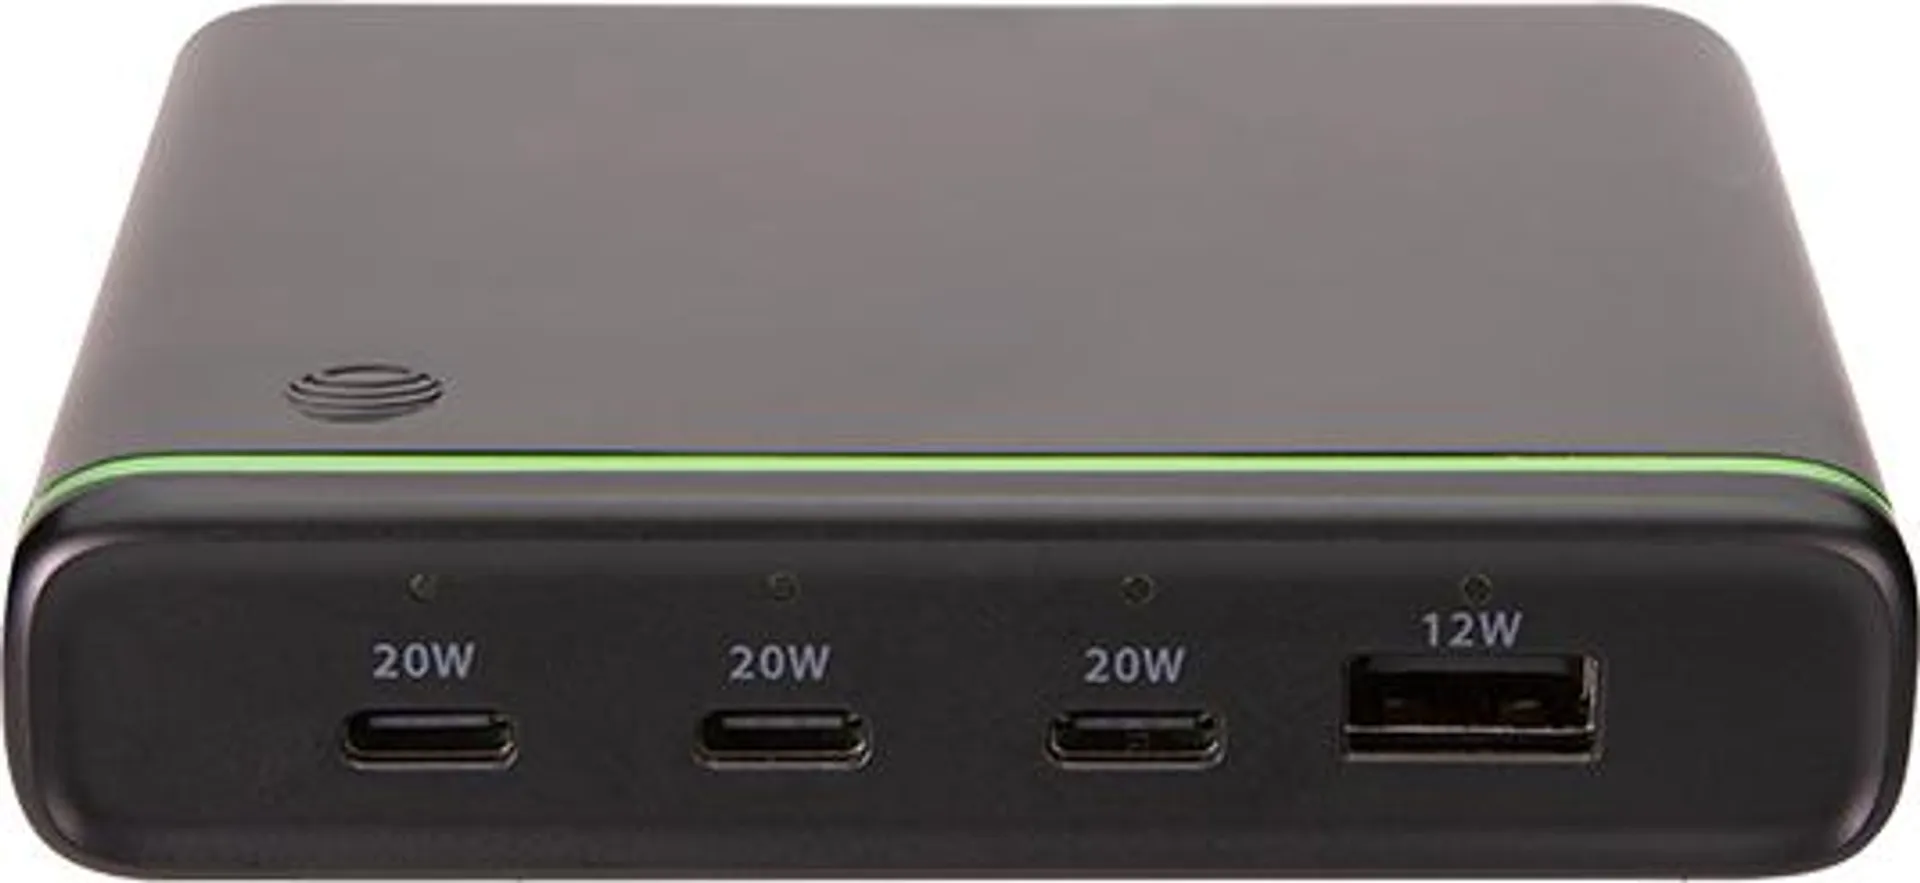 AT&T USB Power Hub 72W with 4 ports (3 USB-C + 1 USB-A)